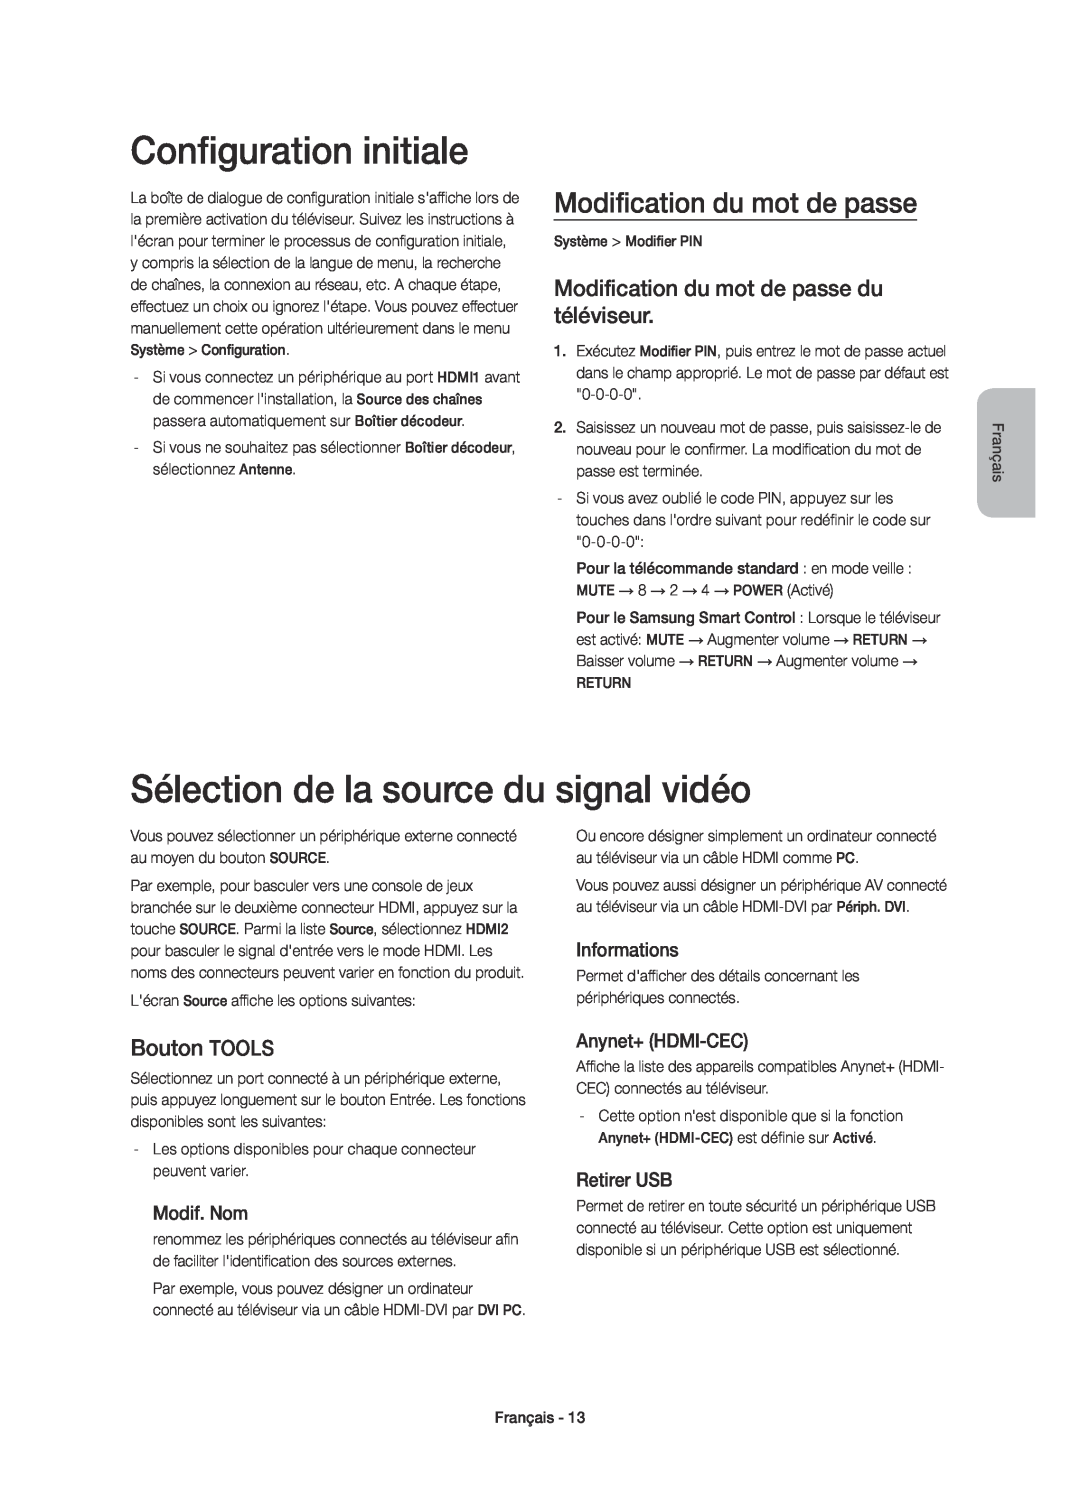 Samsung UE40H6600SVXZG manual Configuration initiale, Sélection de la source du signal vidéo, Modification du mot de passe 